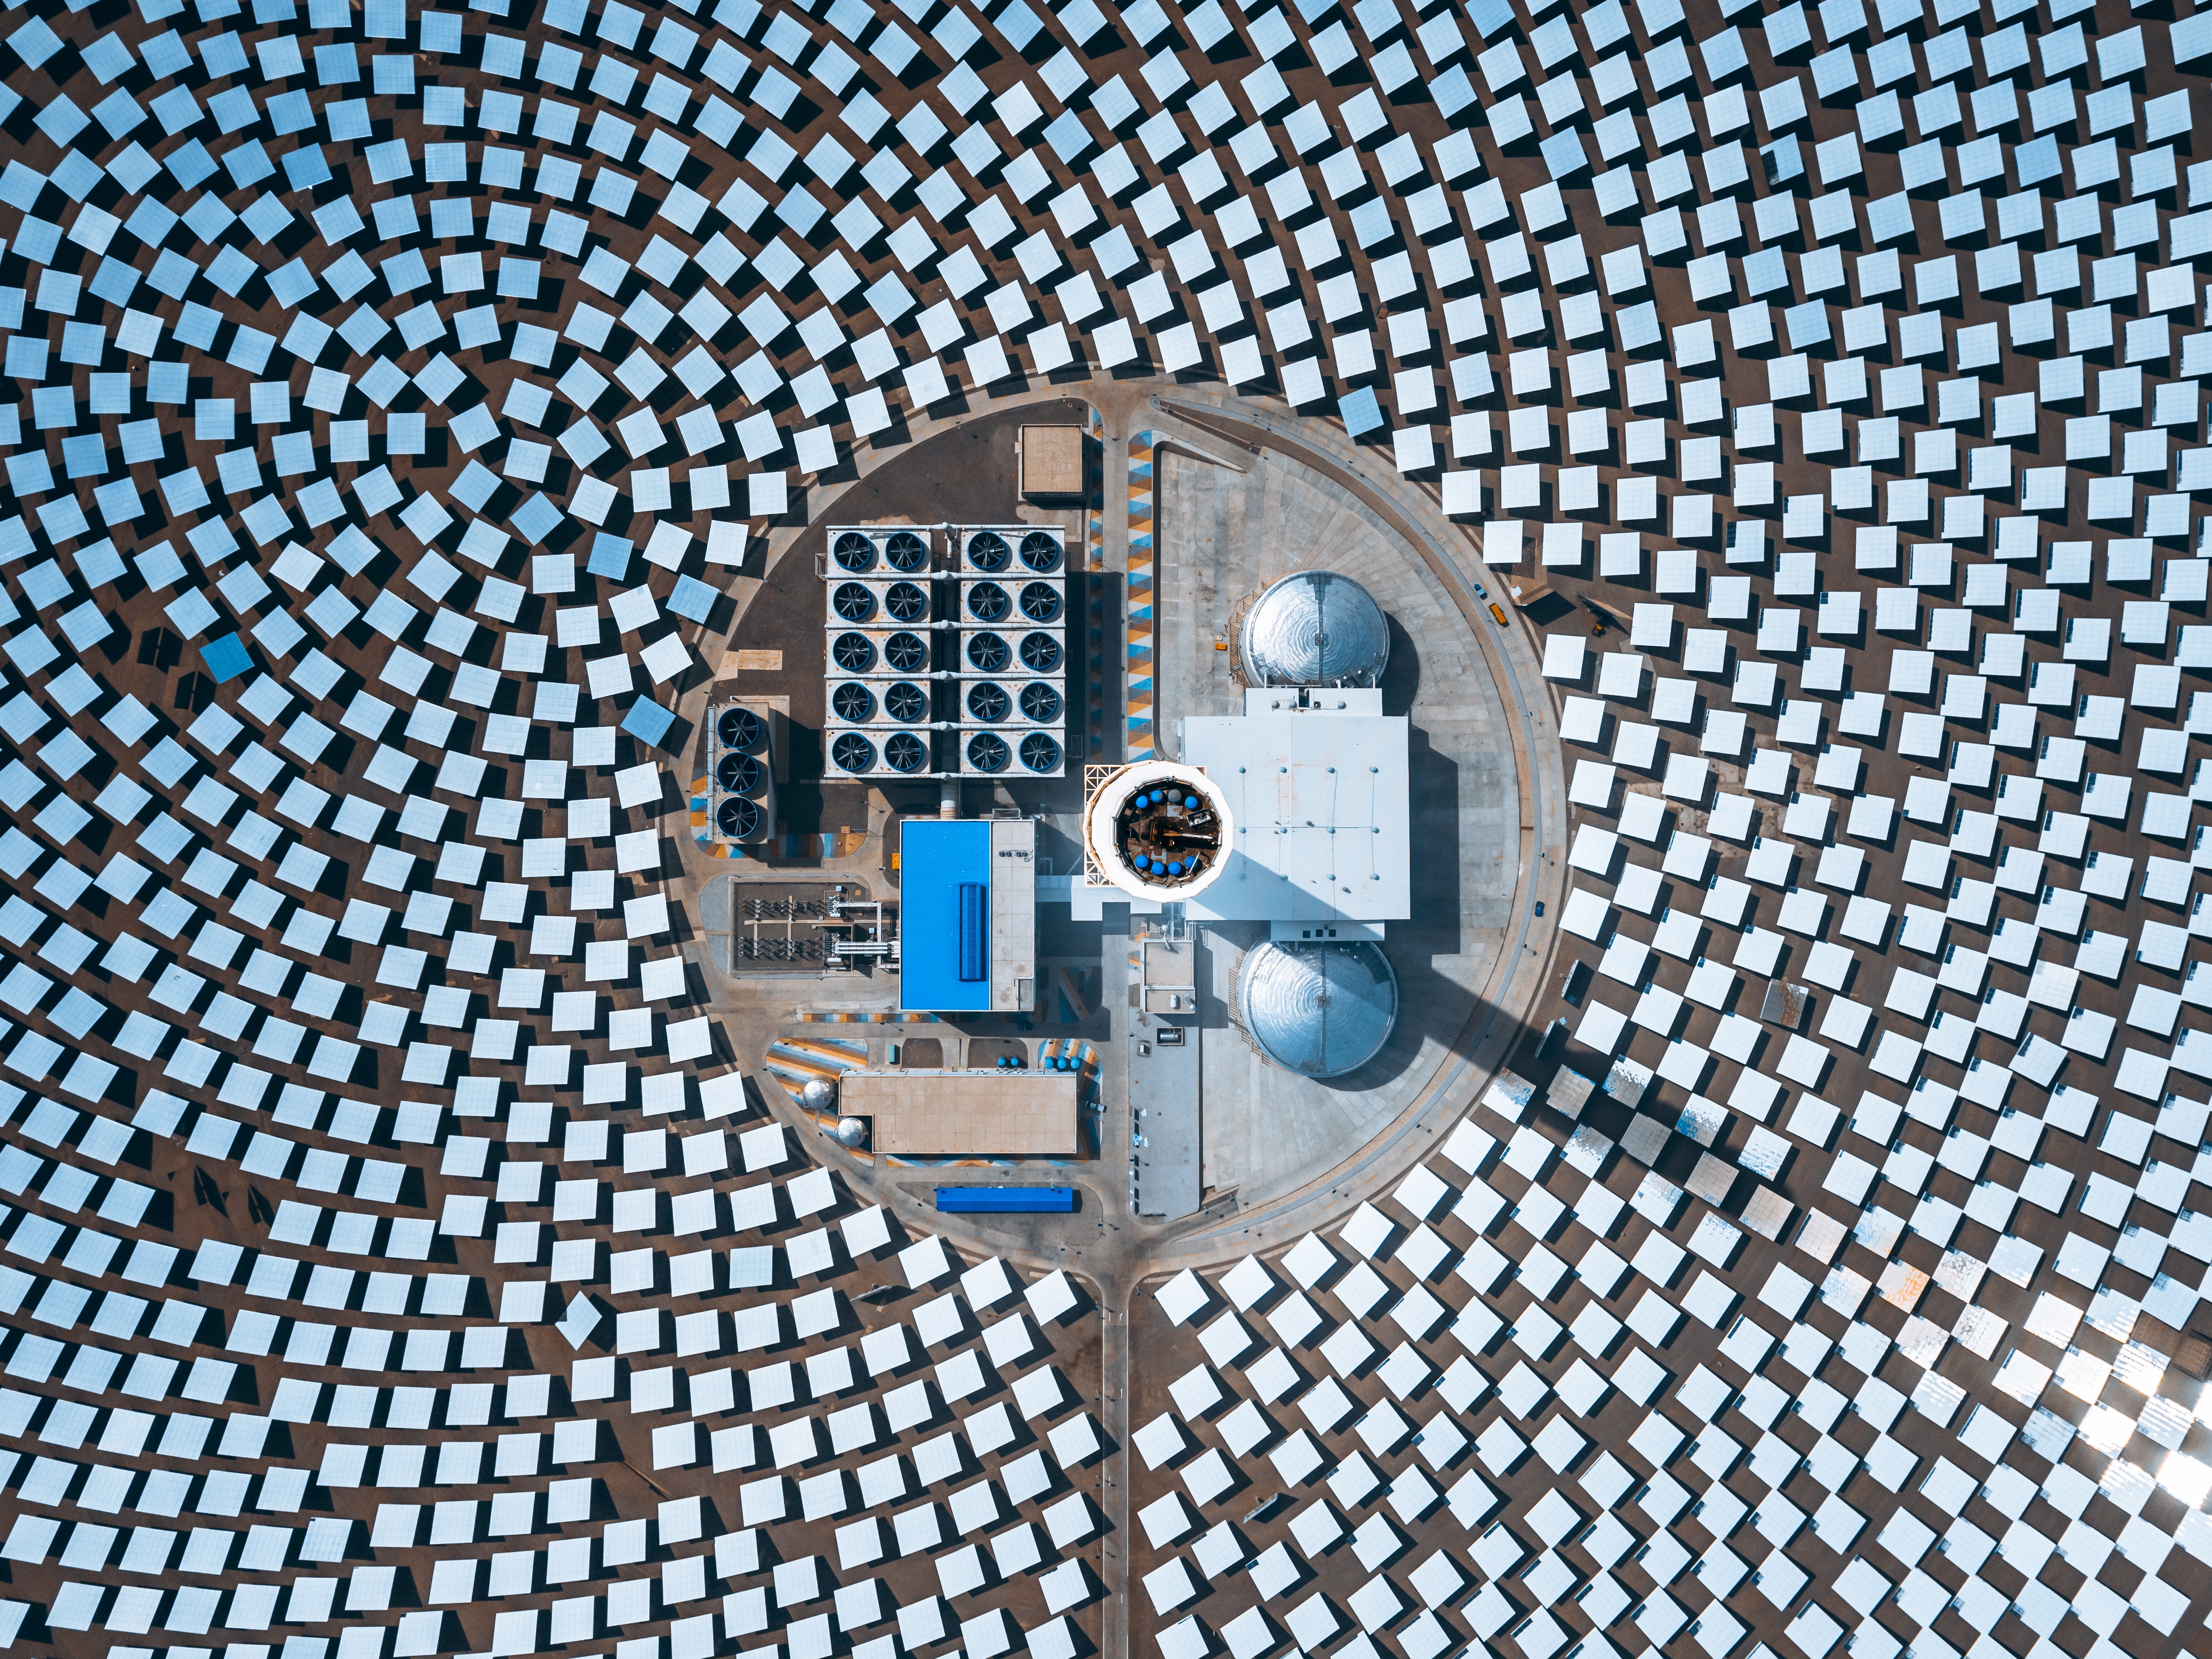 Heliogen A Solar Energy Spac Down 50 In 4 Days On No News Why Seeking Alpha